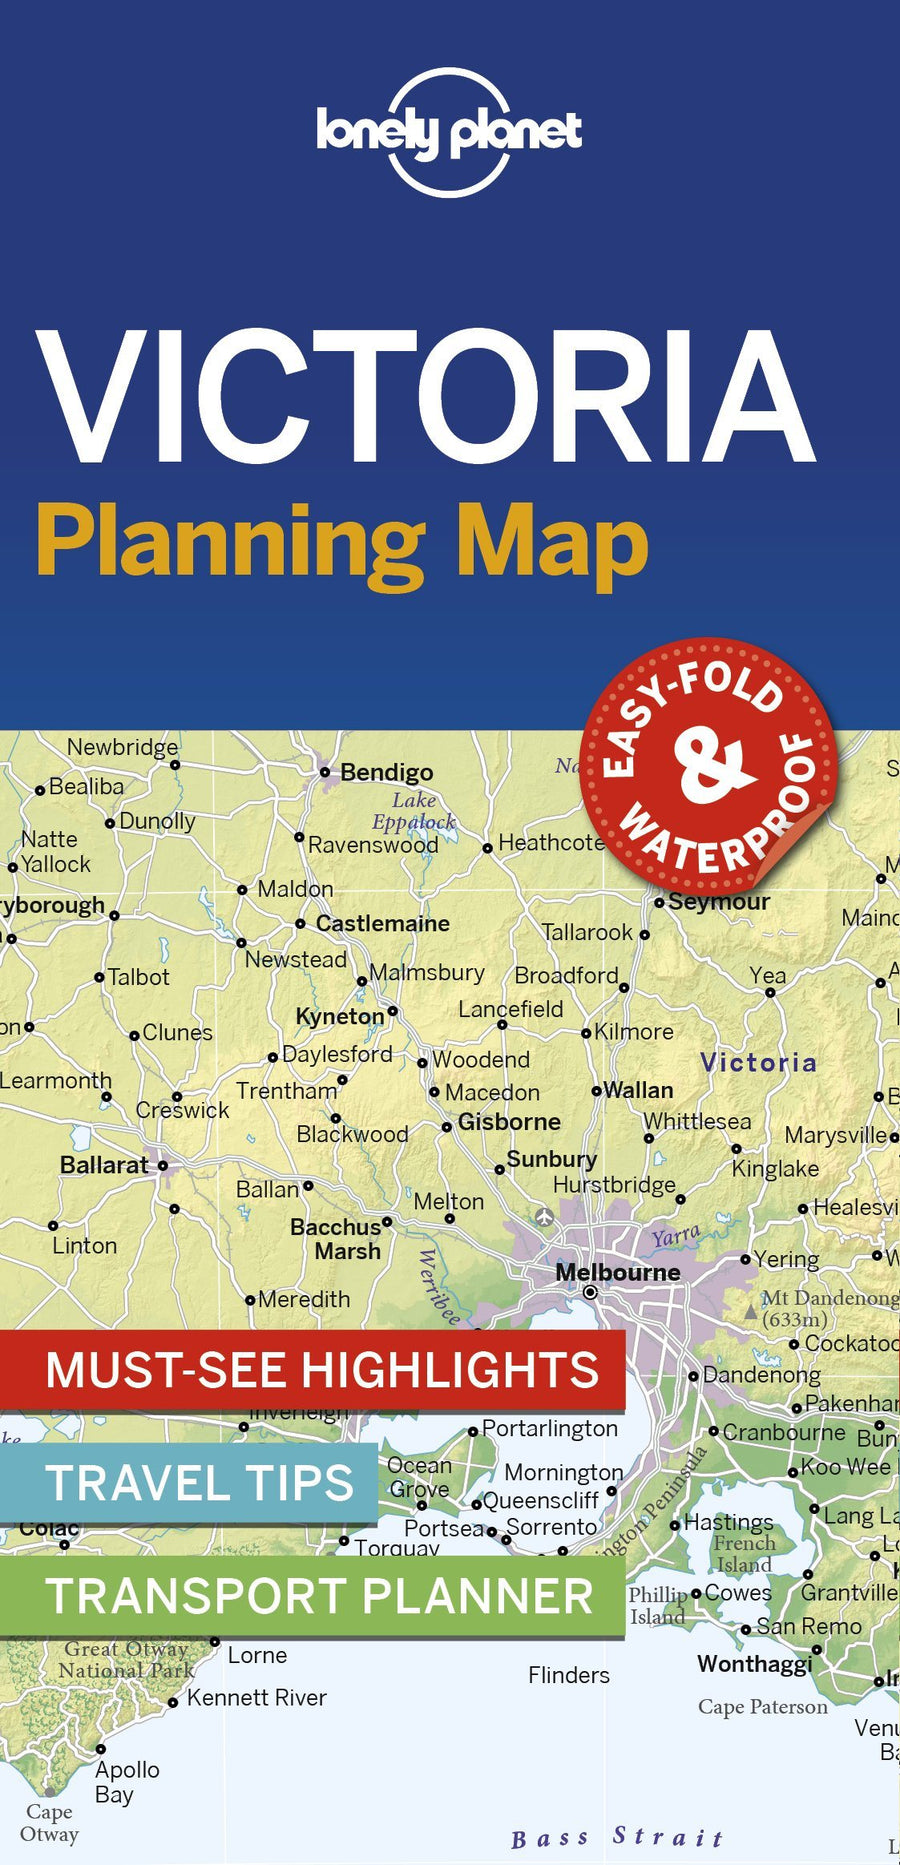 Carte de planification (en anglais) - Victoria (Australie) | Lonely Planet carte pliée Lonely Planet 